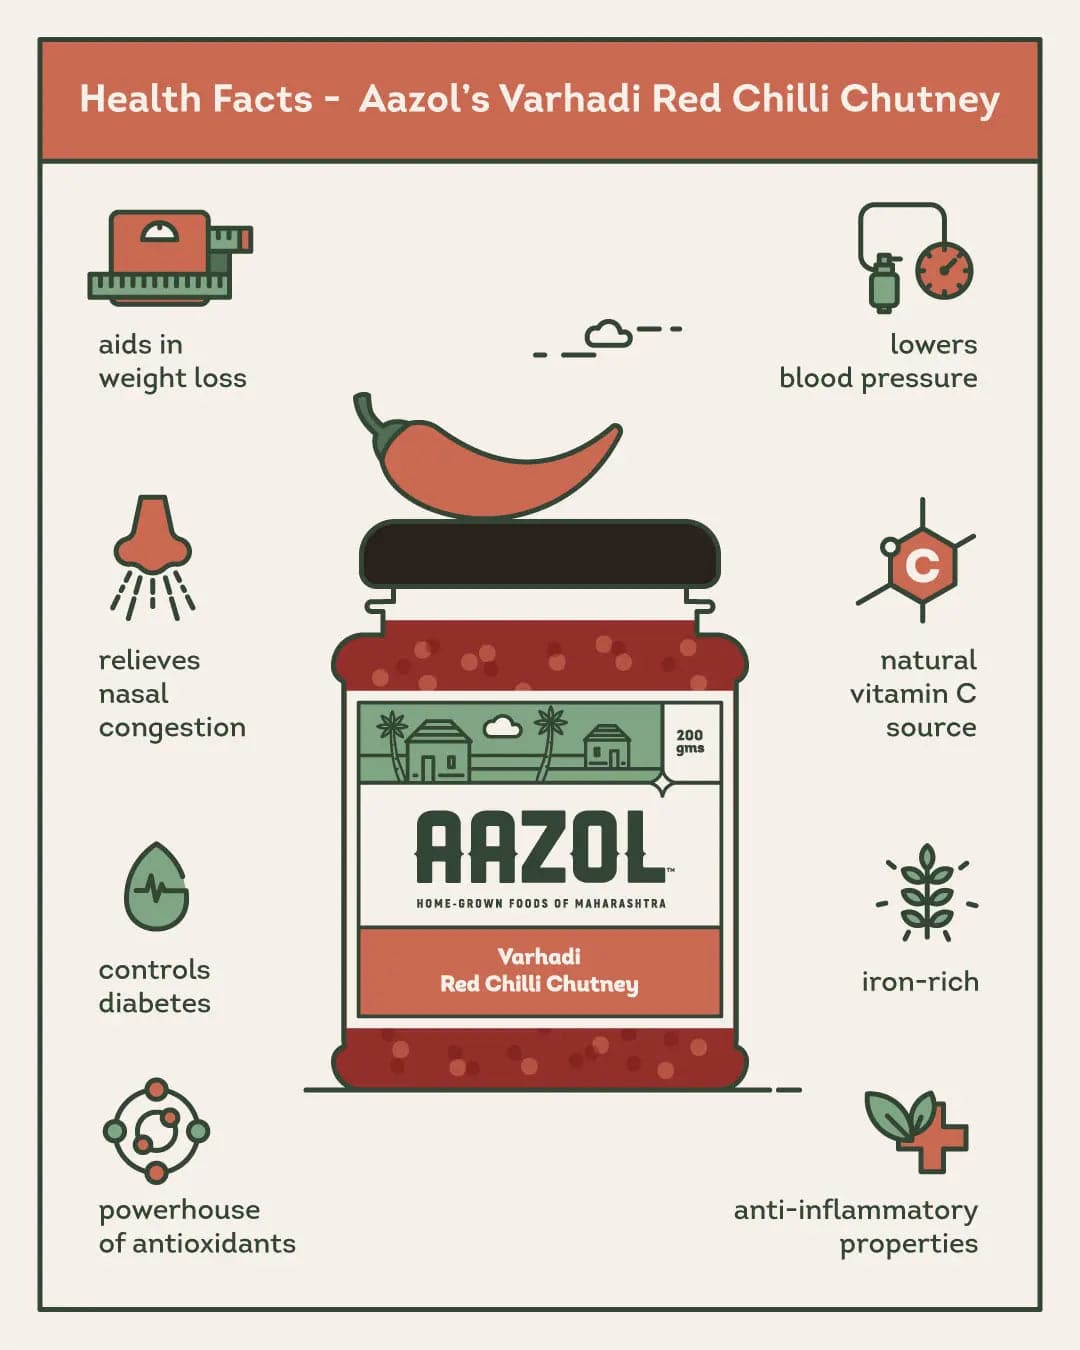 Varhadi Spicy Red Chilli Chutney - 200g Aazol